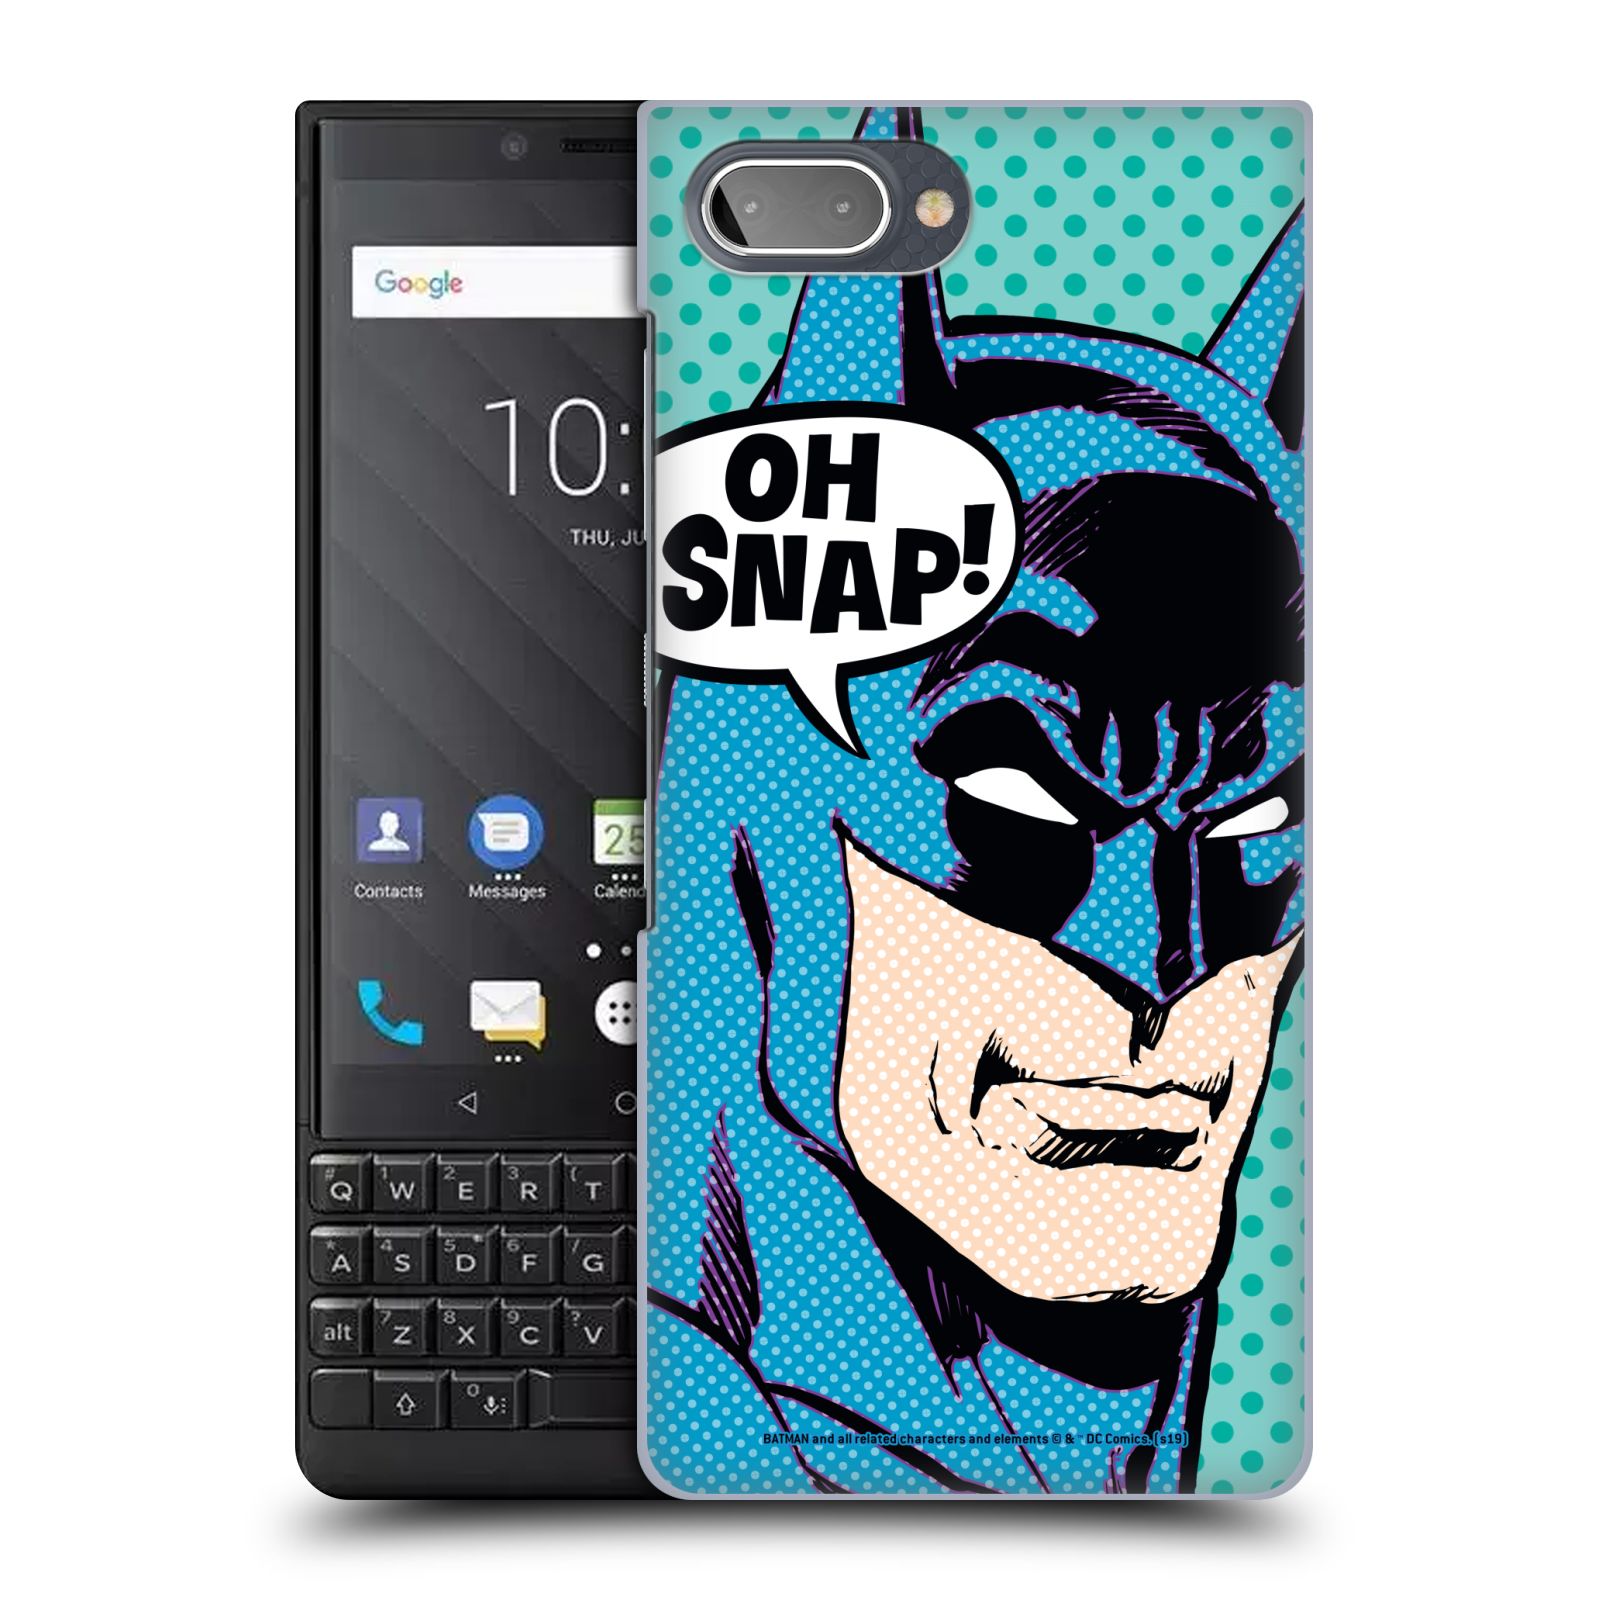 Pouzdro na mobil Blackberry KEY 2 - HEAD CASE - DC komix Batman Pop Art tvář